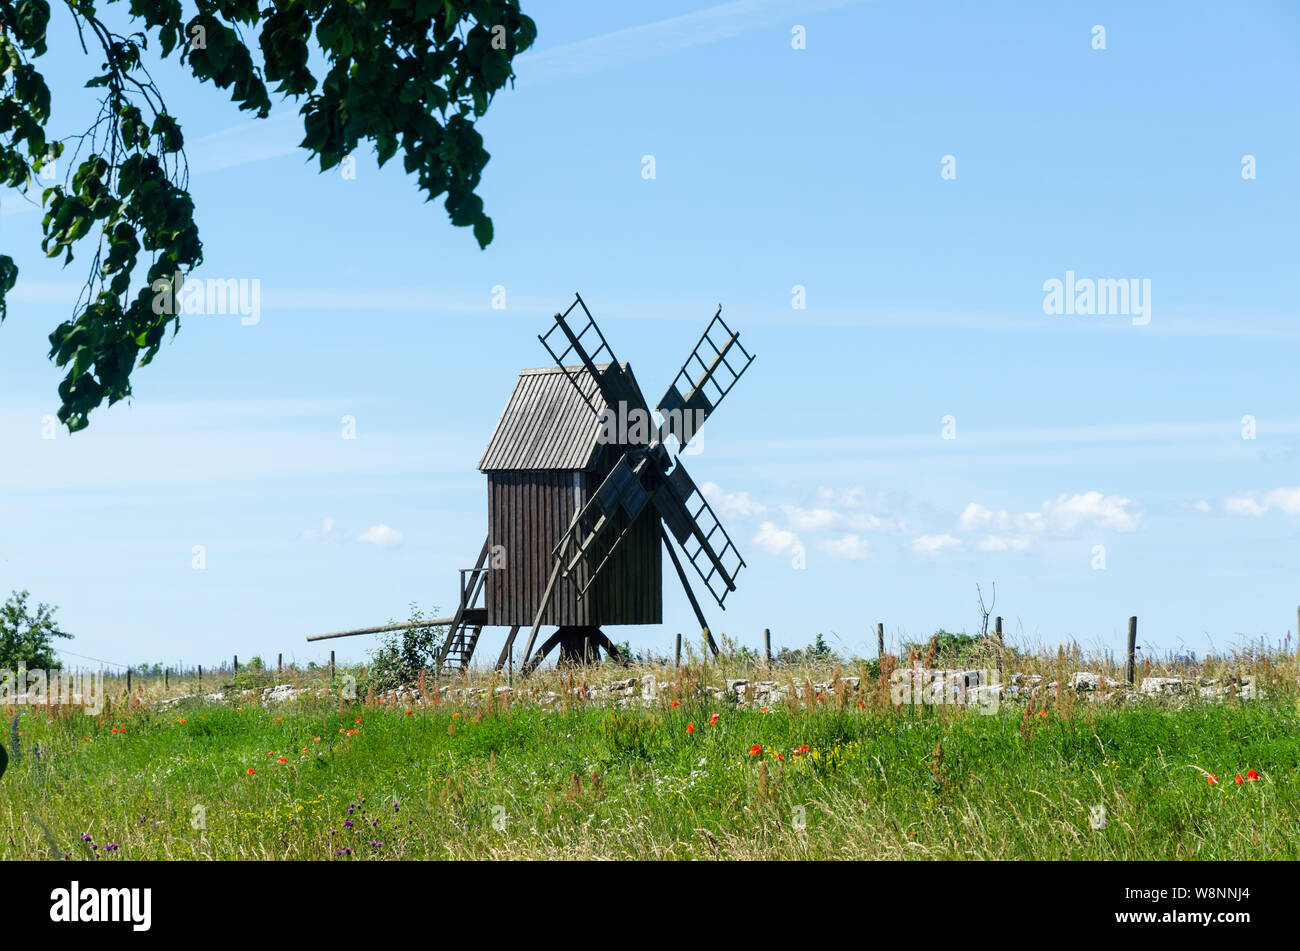 Ancien moulin à vent en bois le symbole pour l'île de Oland, l'île du soleil et du vent en Suède Banque D'Images